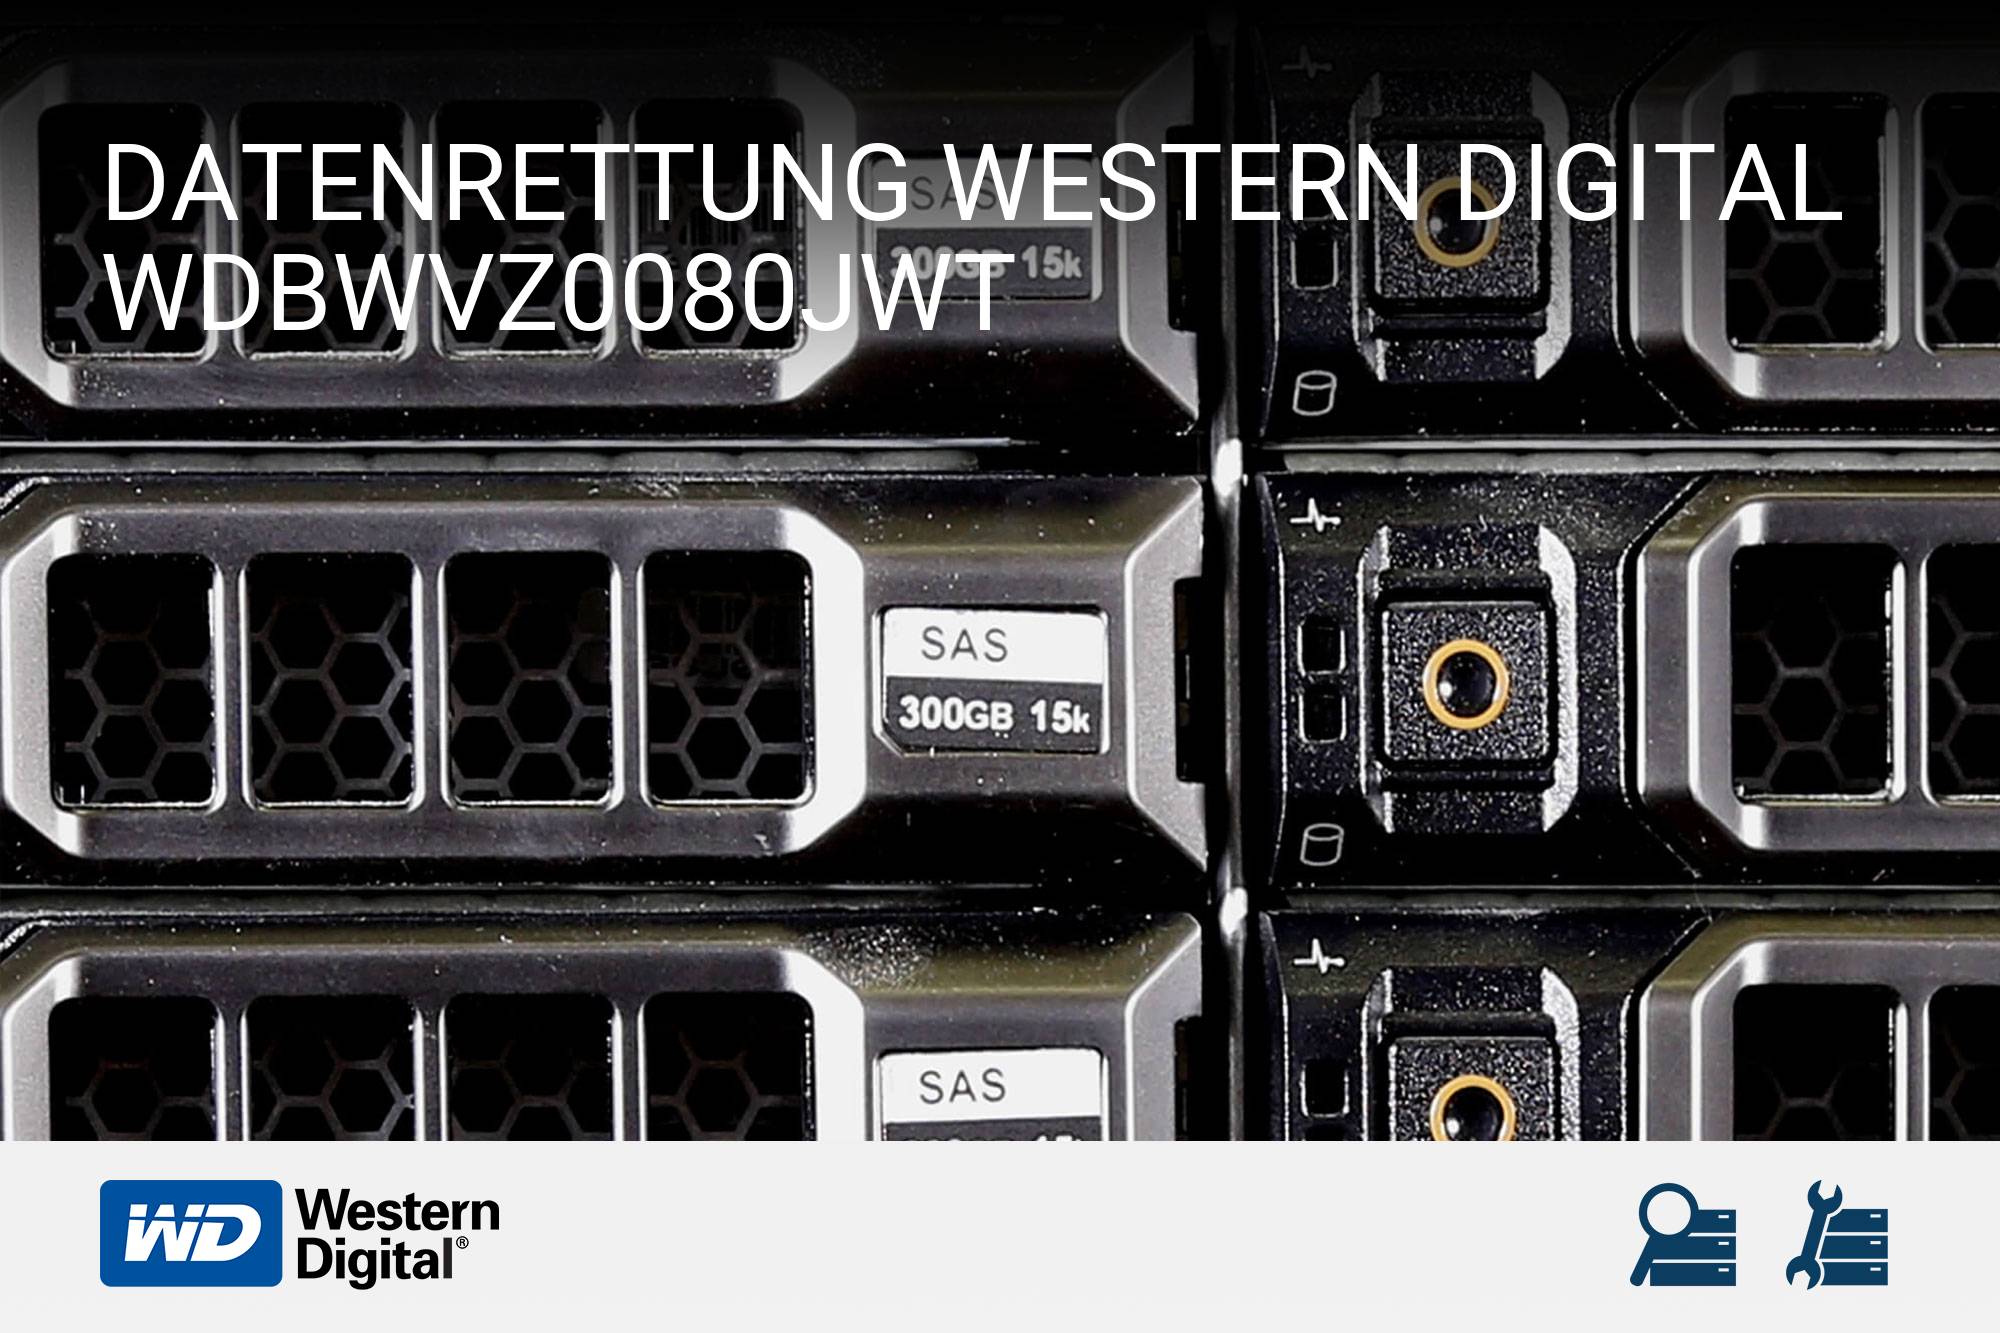 Western Digital WDBWVZ0080JWT